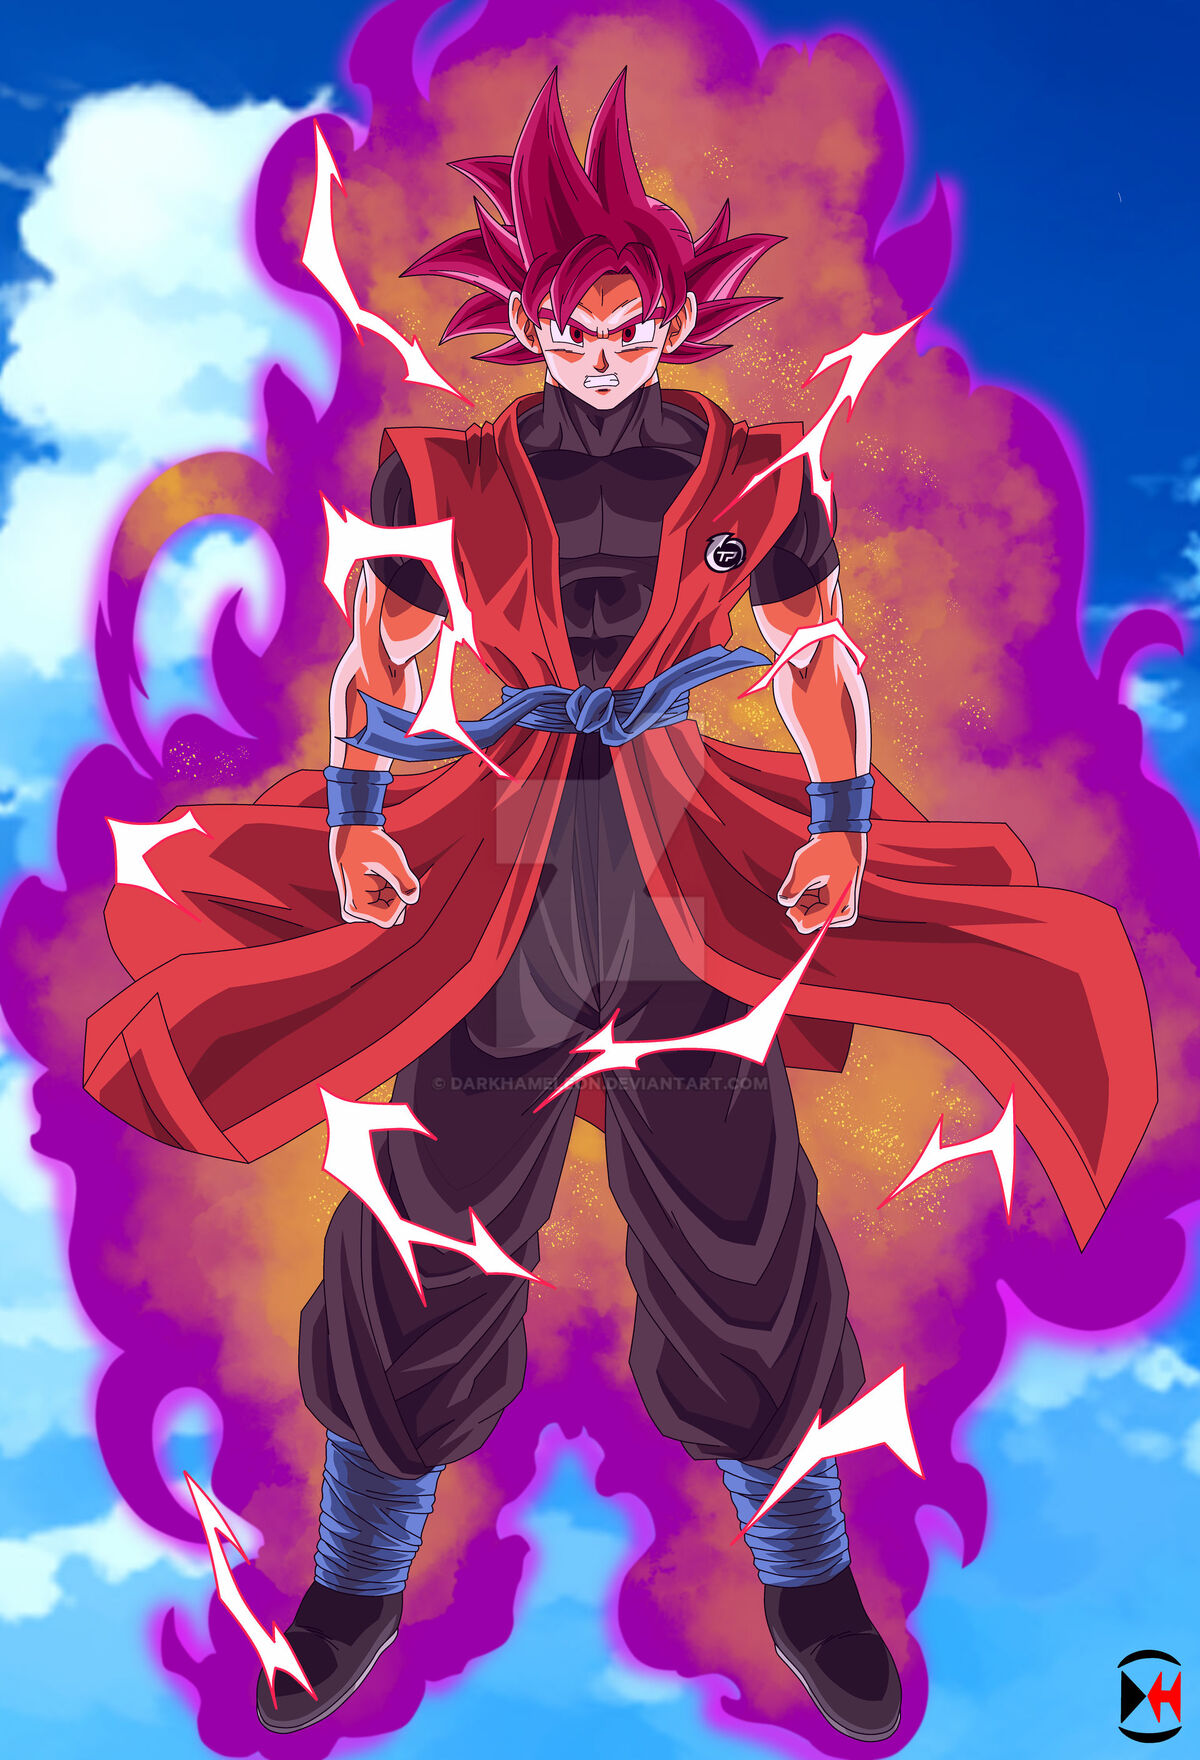 daekim_26 on X: Son Goku (Ssj2) A super saiyan that has ascended